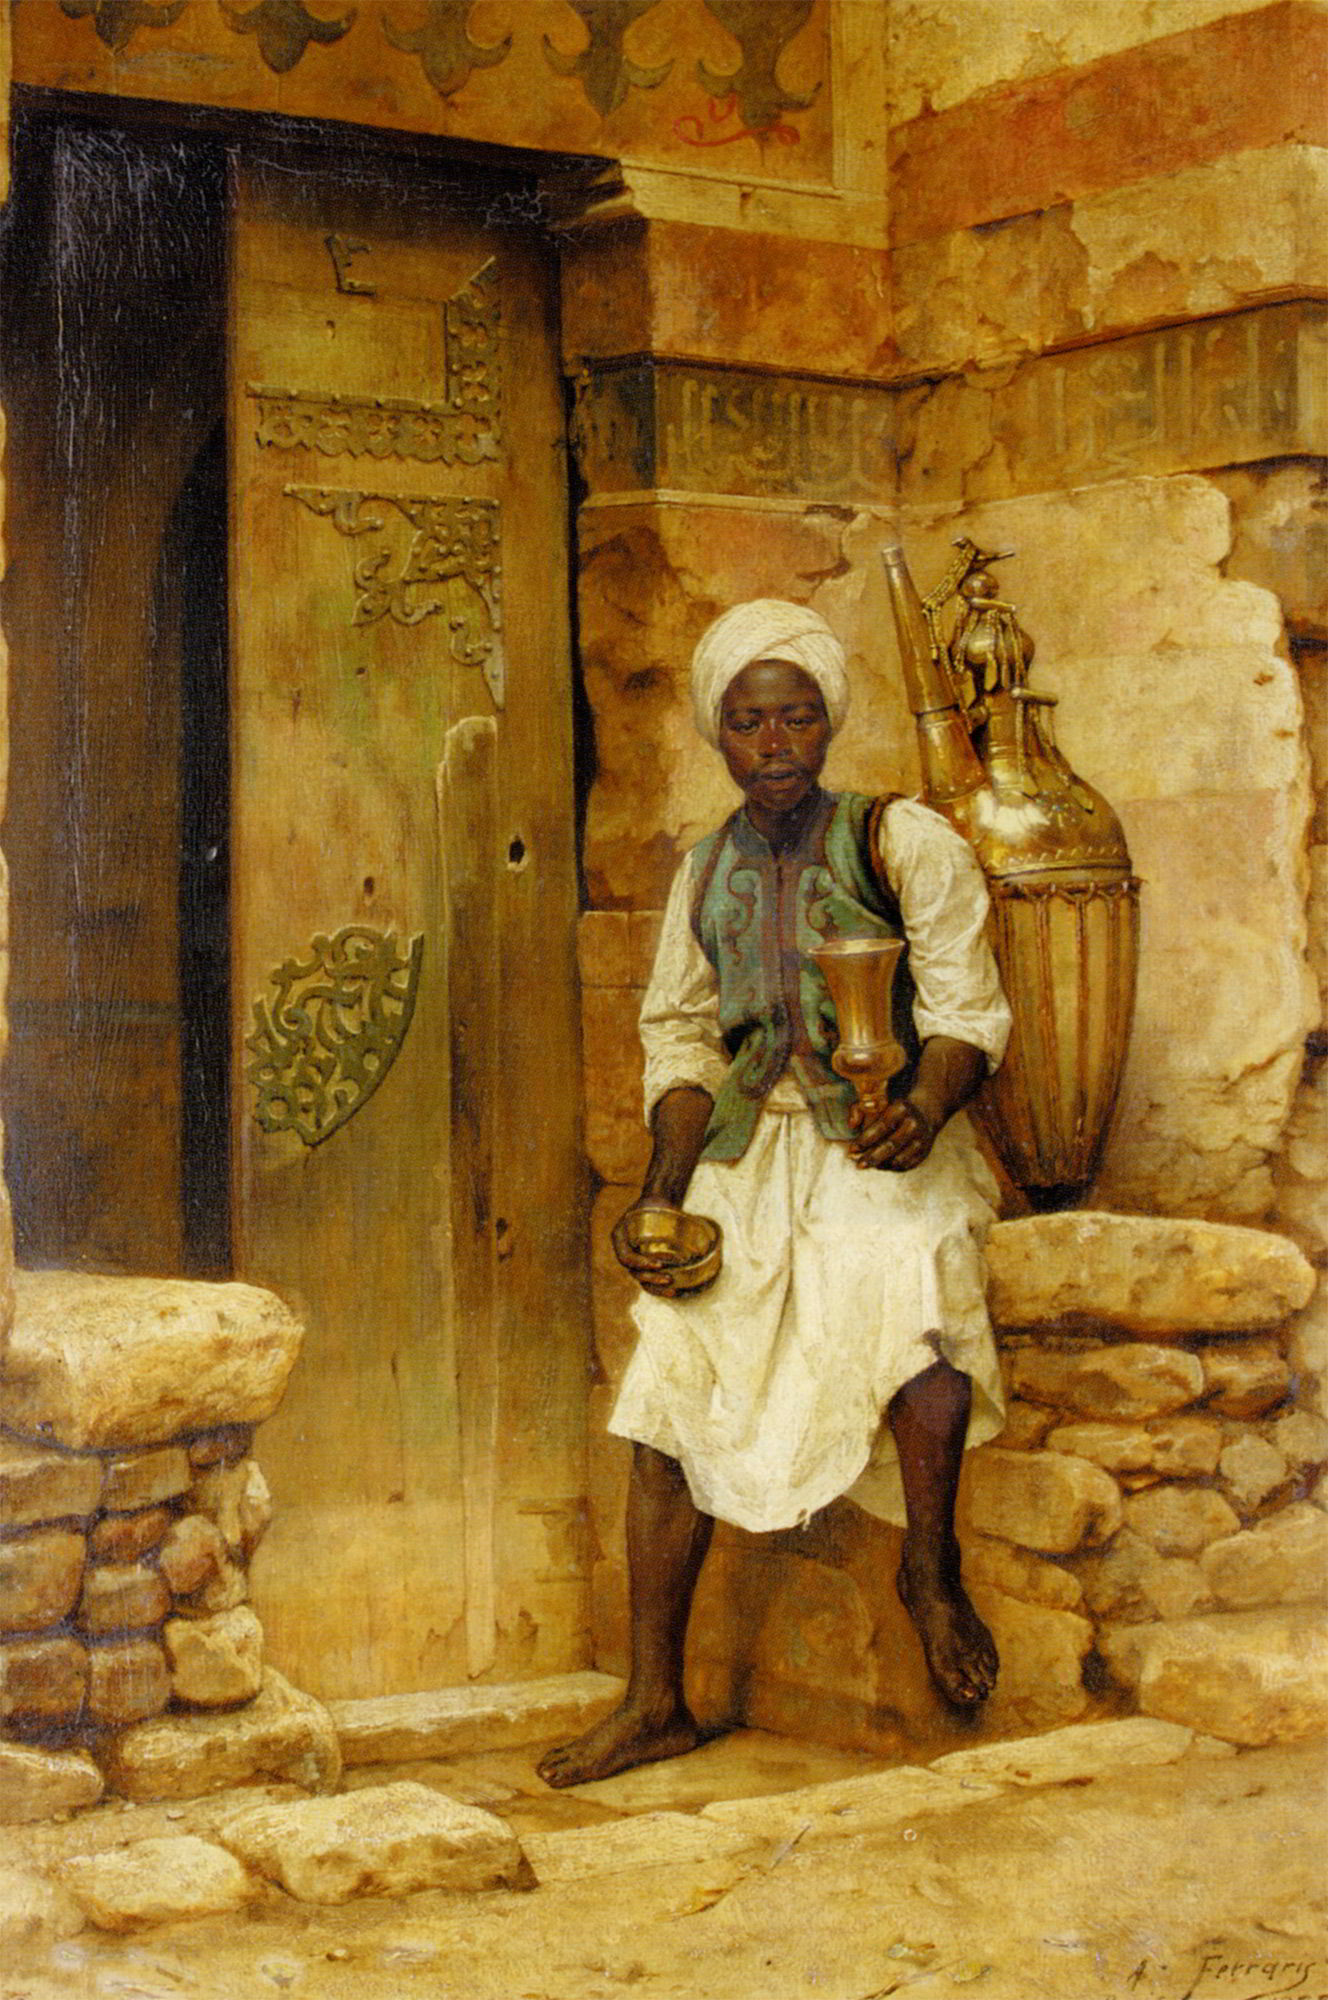 A Nubian Boy by Arthur von Ferraris